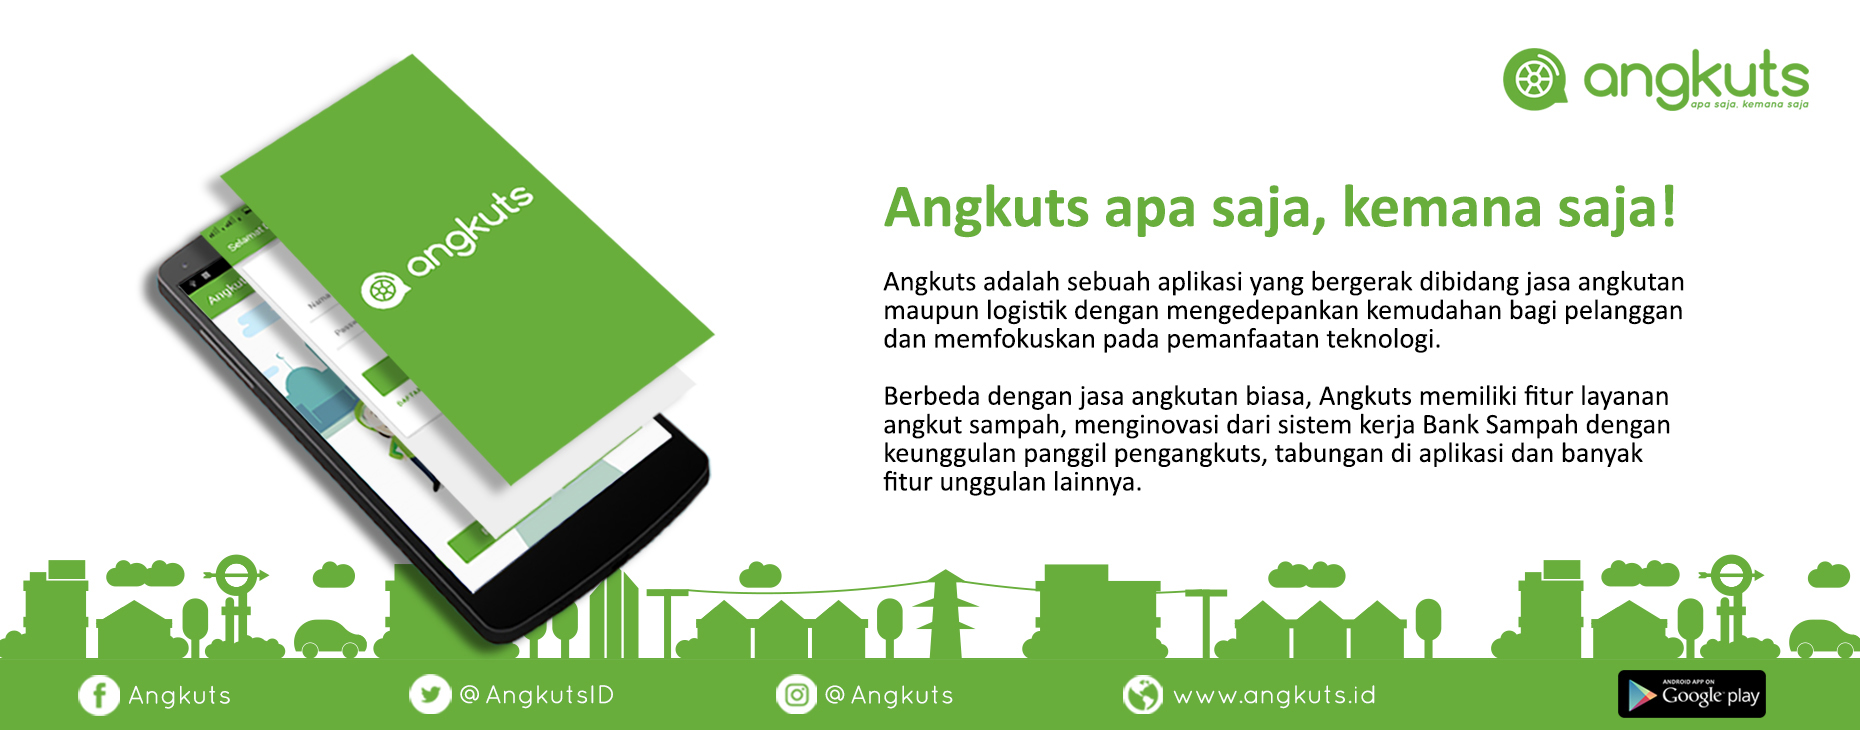 Aplikasi Angkuts sebagai solusi permasalahan sampah di Pontianak. Sumber: Angkuts.id